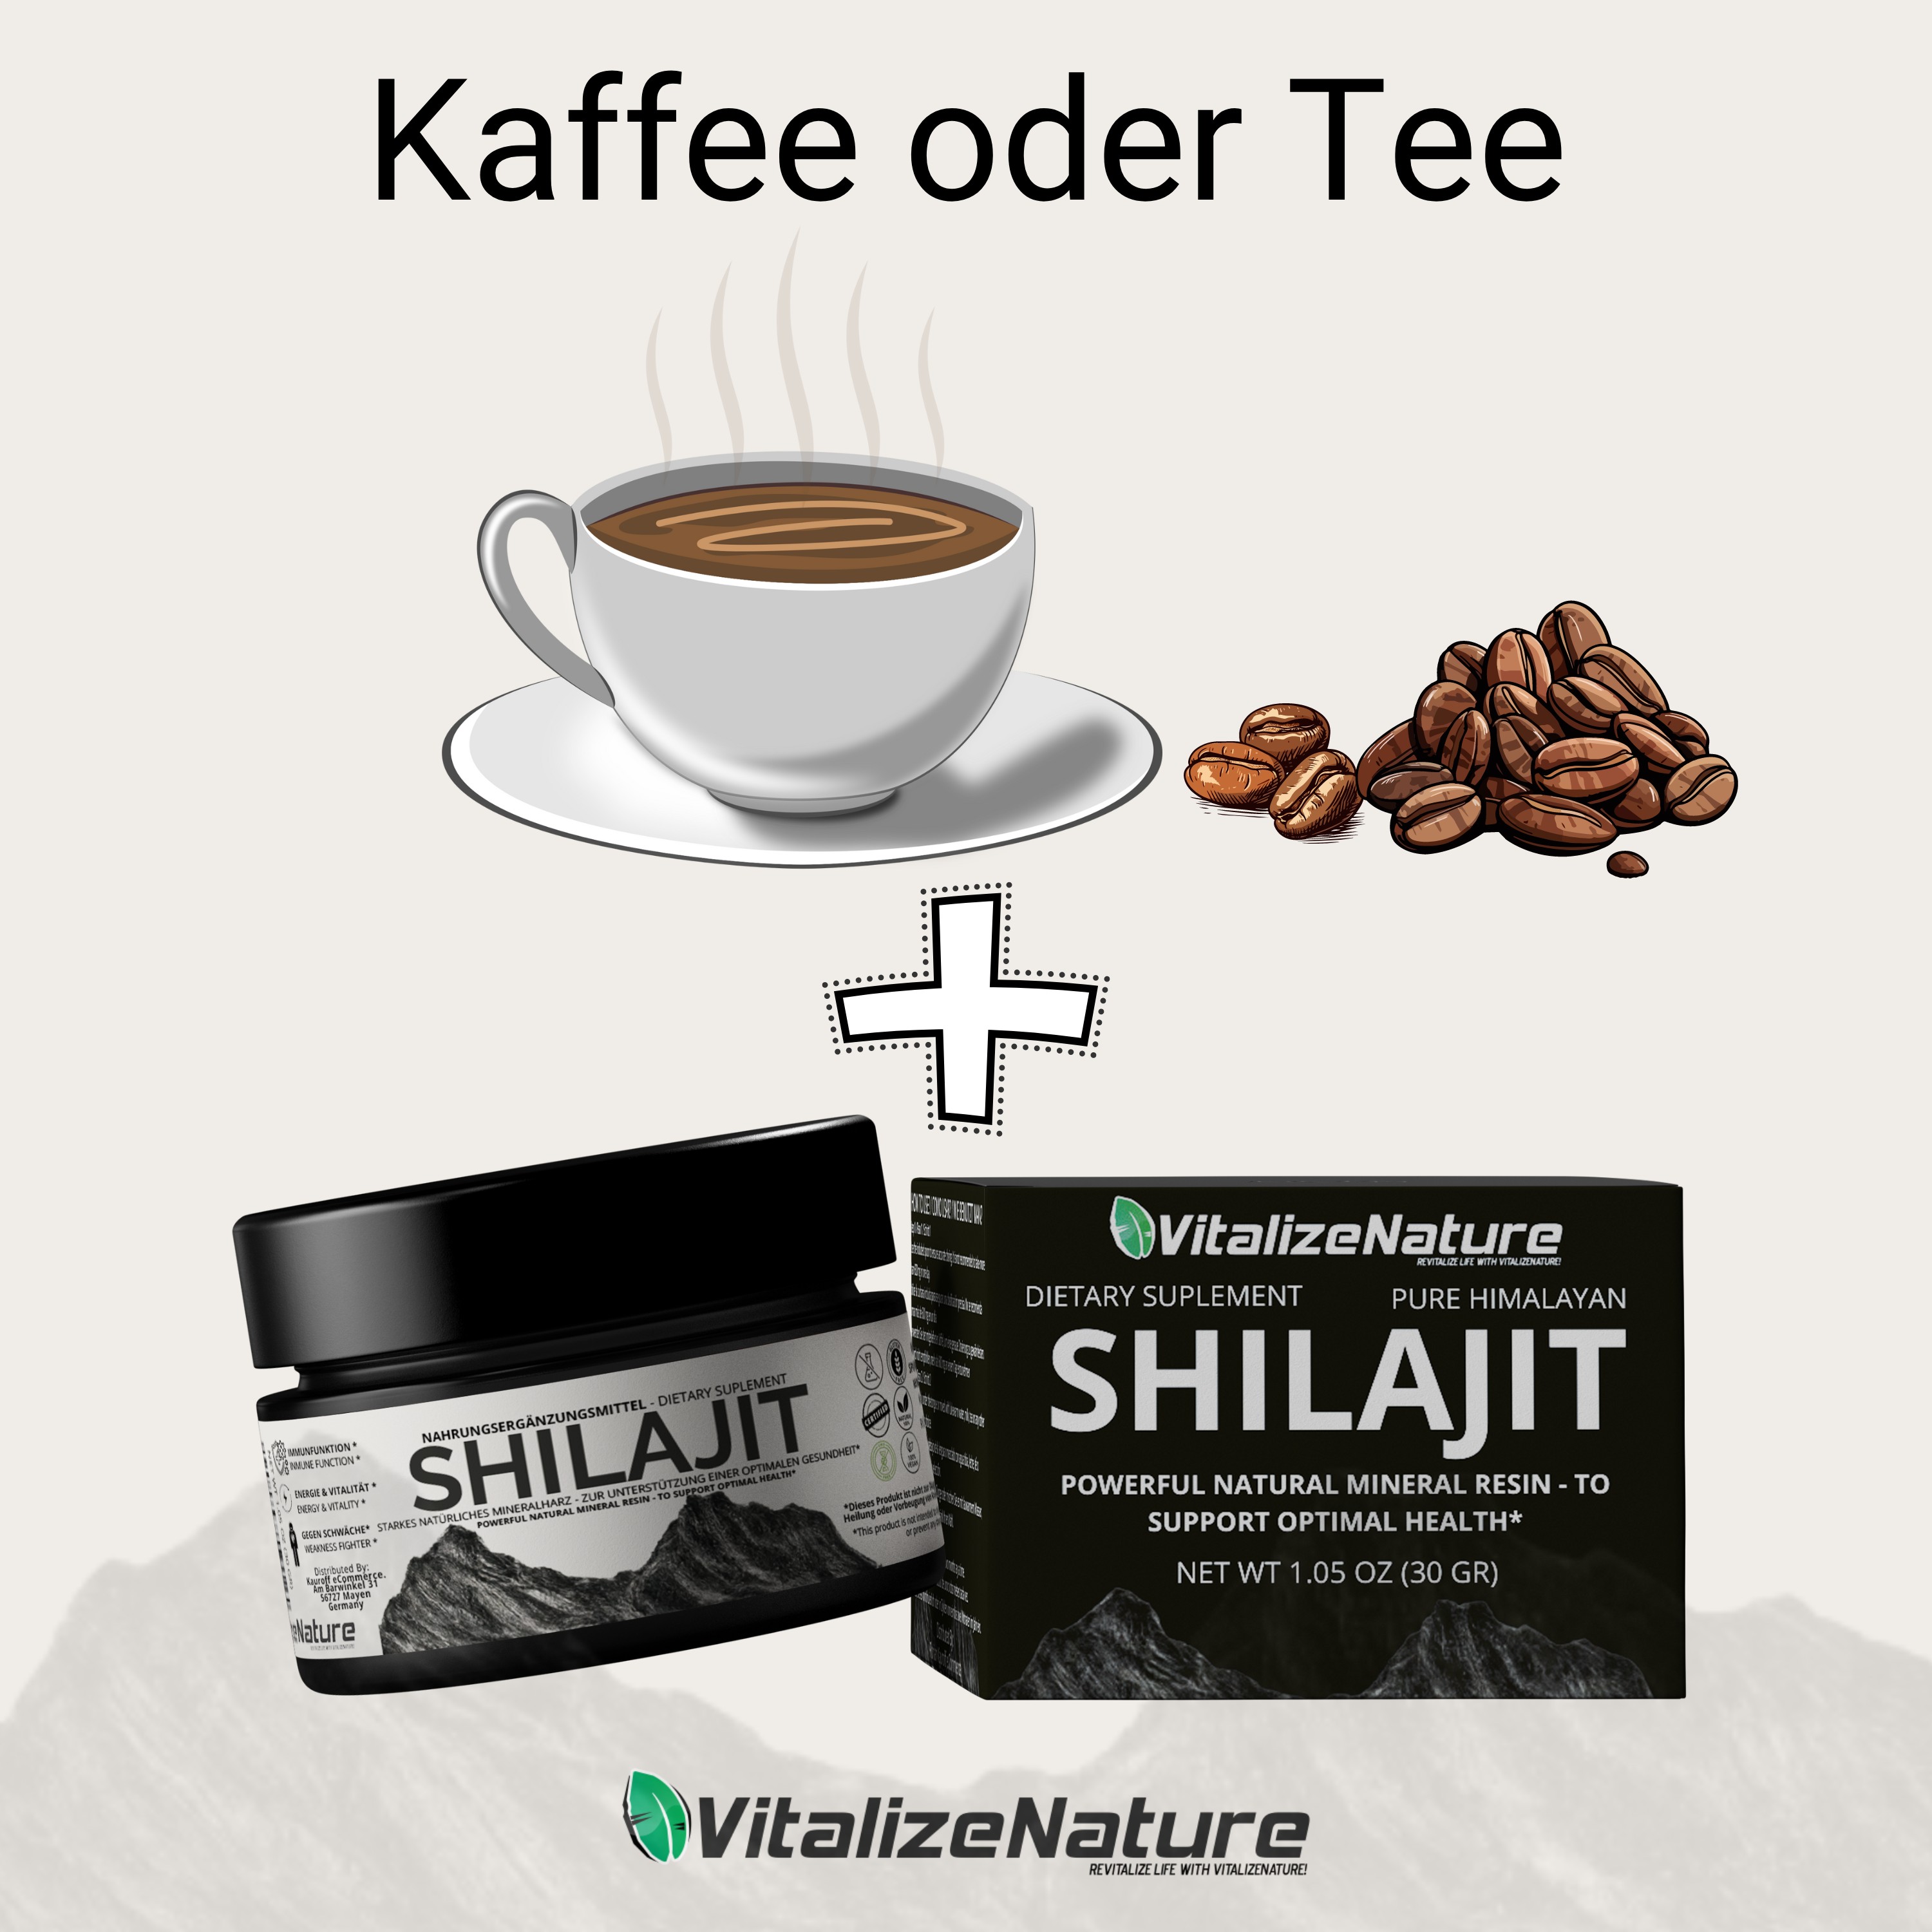 VitalizeNature - Shilajit - 30g Shilajit Original + Ashwagandha - natürliches Himalaya Shilajit - 500mg Shilajit Resin pro Tagesdosis & 100mg Ashwanganda - Shijalit & Ayurvedischer Kräutermischung